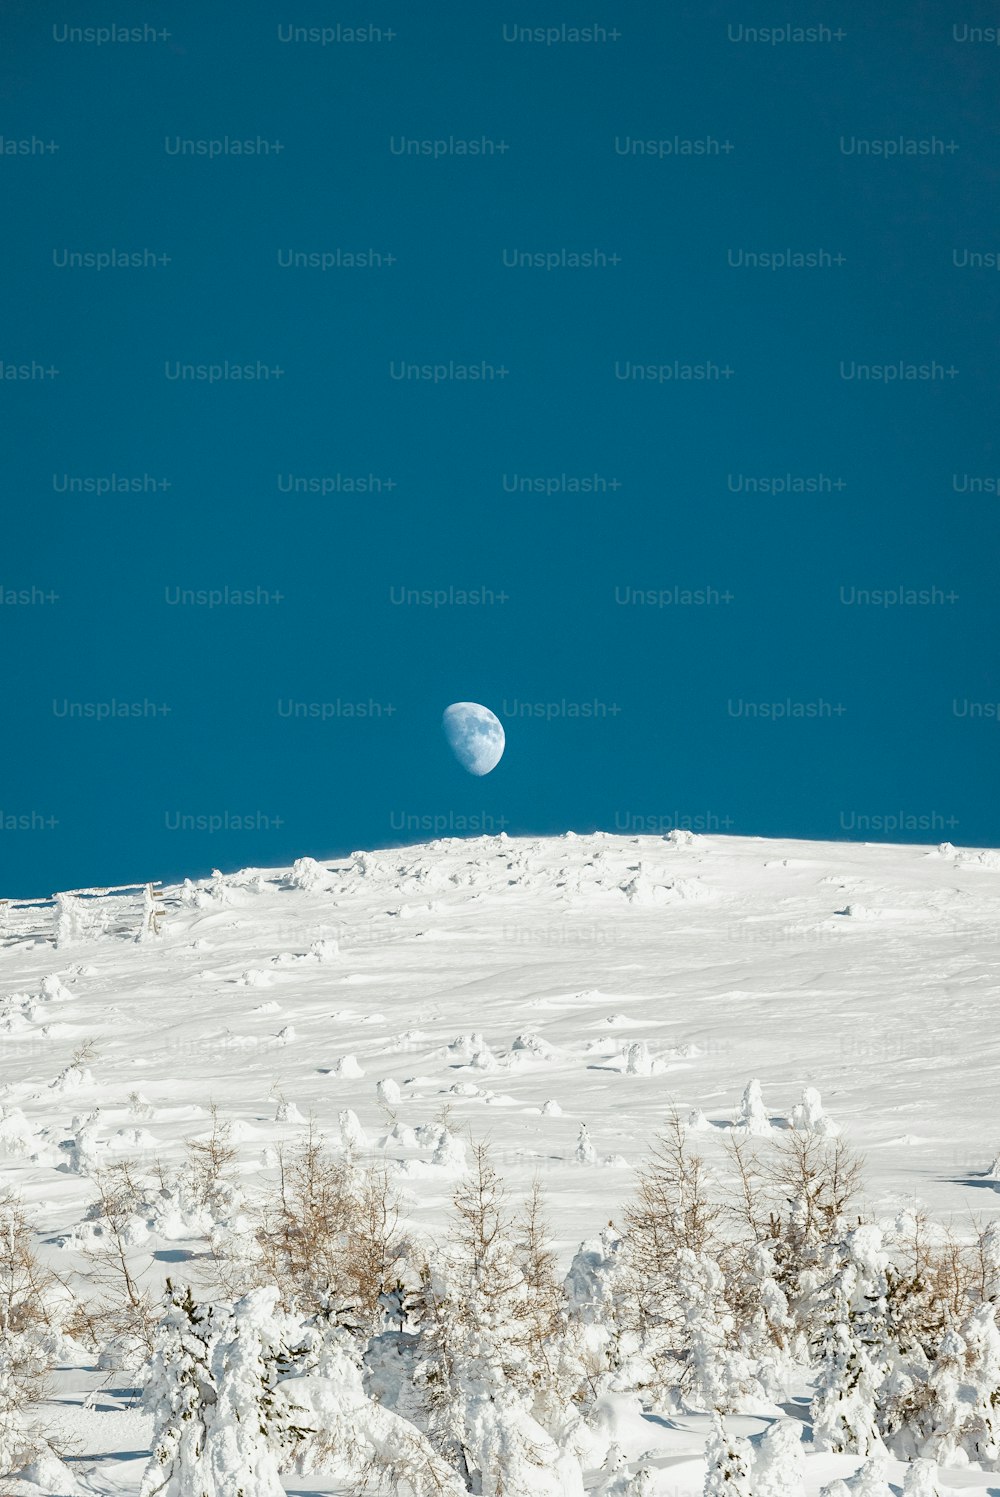 Une vue de la lune depuis le sommet d’une colline enneigée